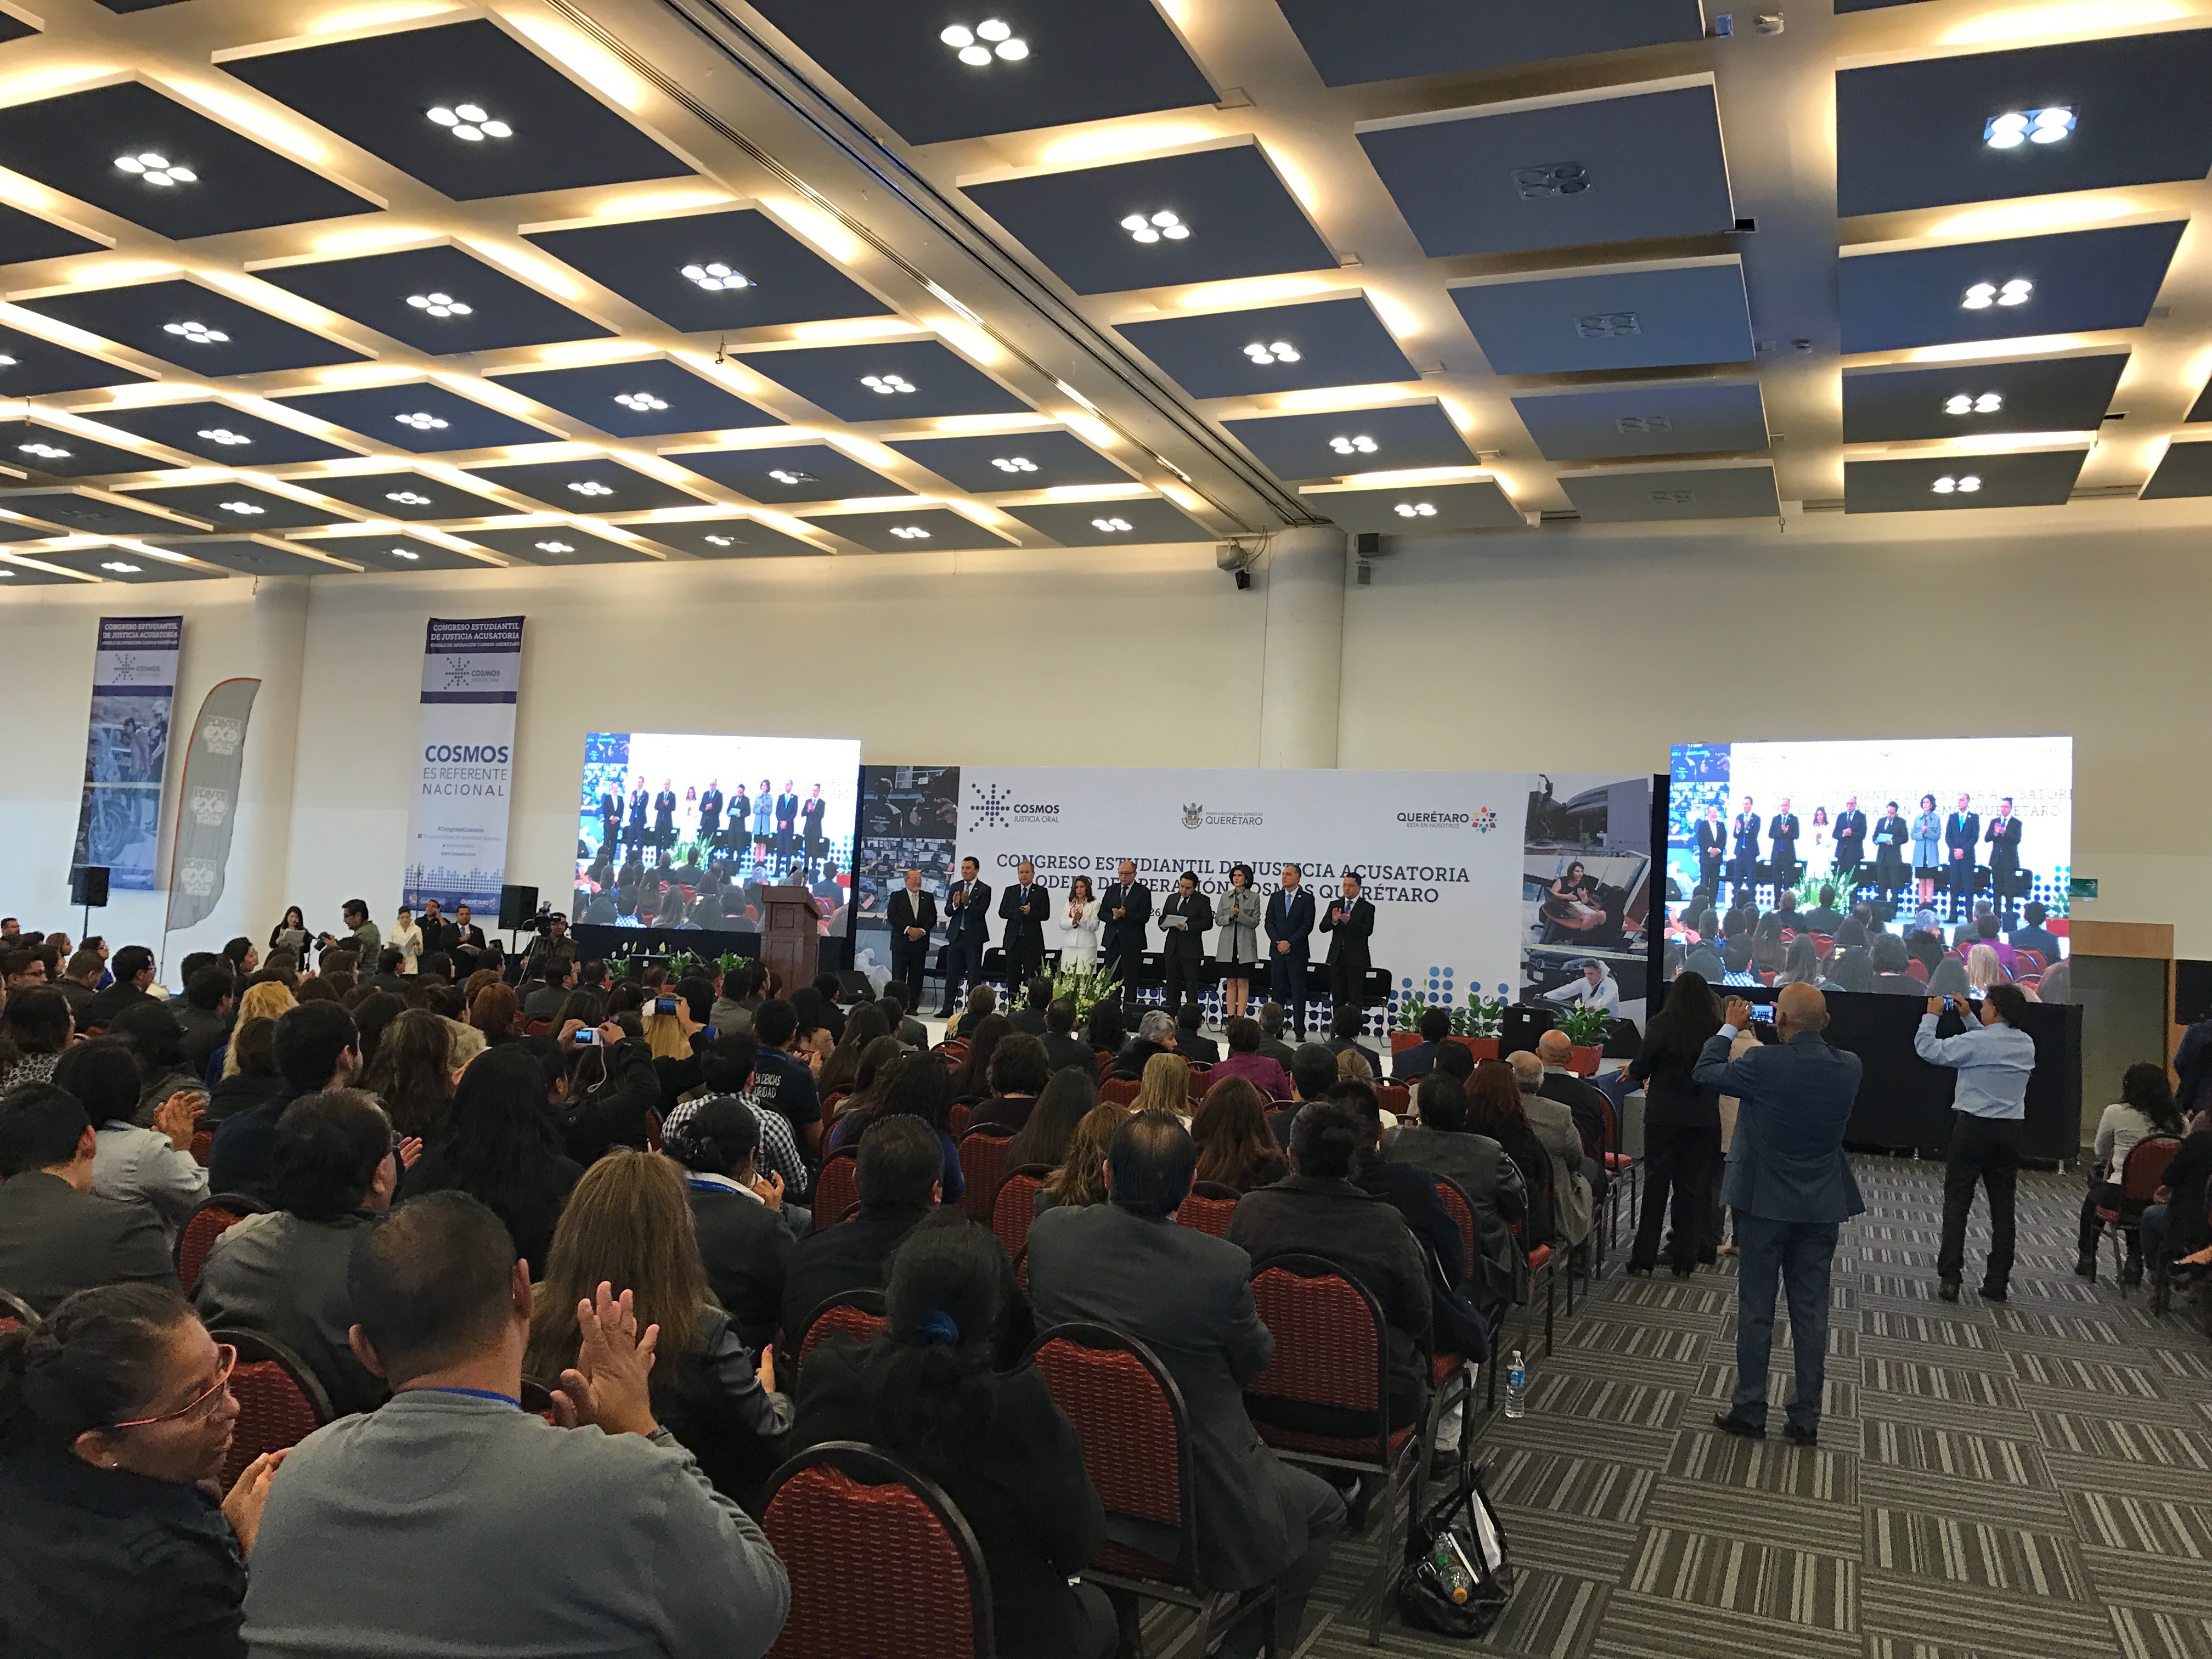  Para acercar a los estudiantes a la nueva justicia penal, se inaugura congreso sobre el Sistema Cosmos de Querétaro